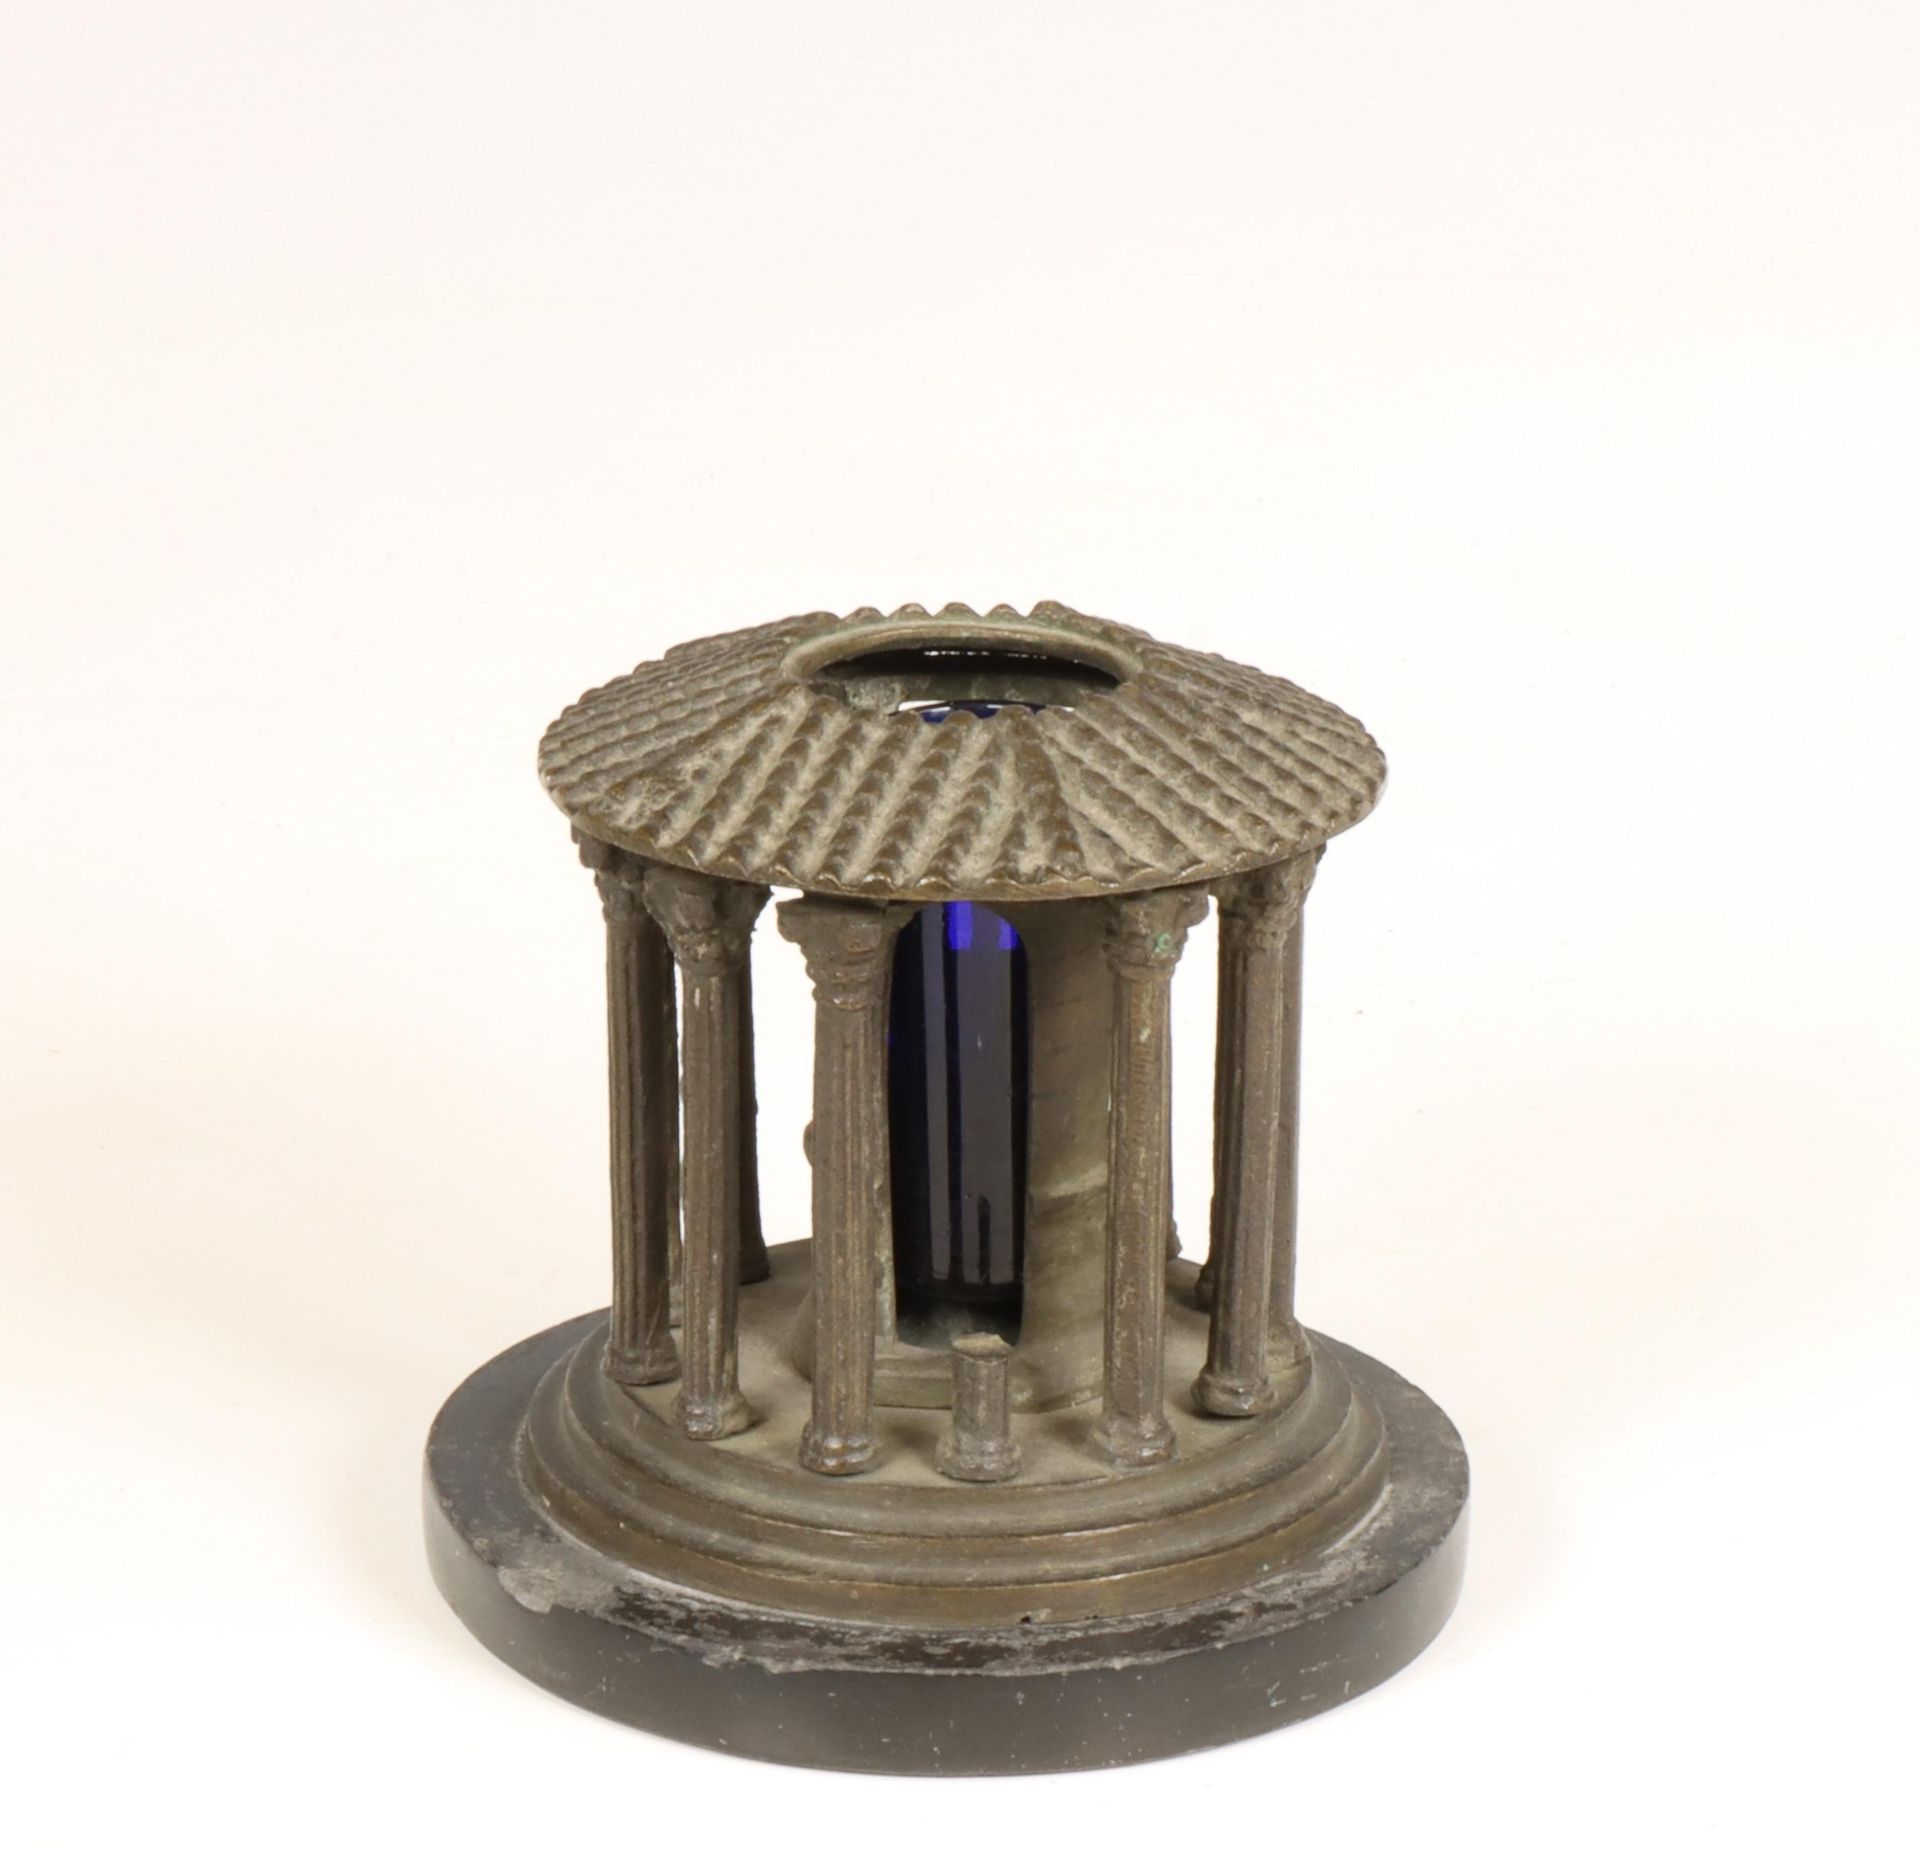 Gezwart metalen inktpot in de vorm van Tempel Vesta, Tivoli, ca. 1900.